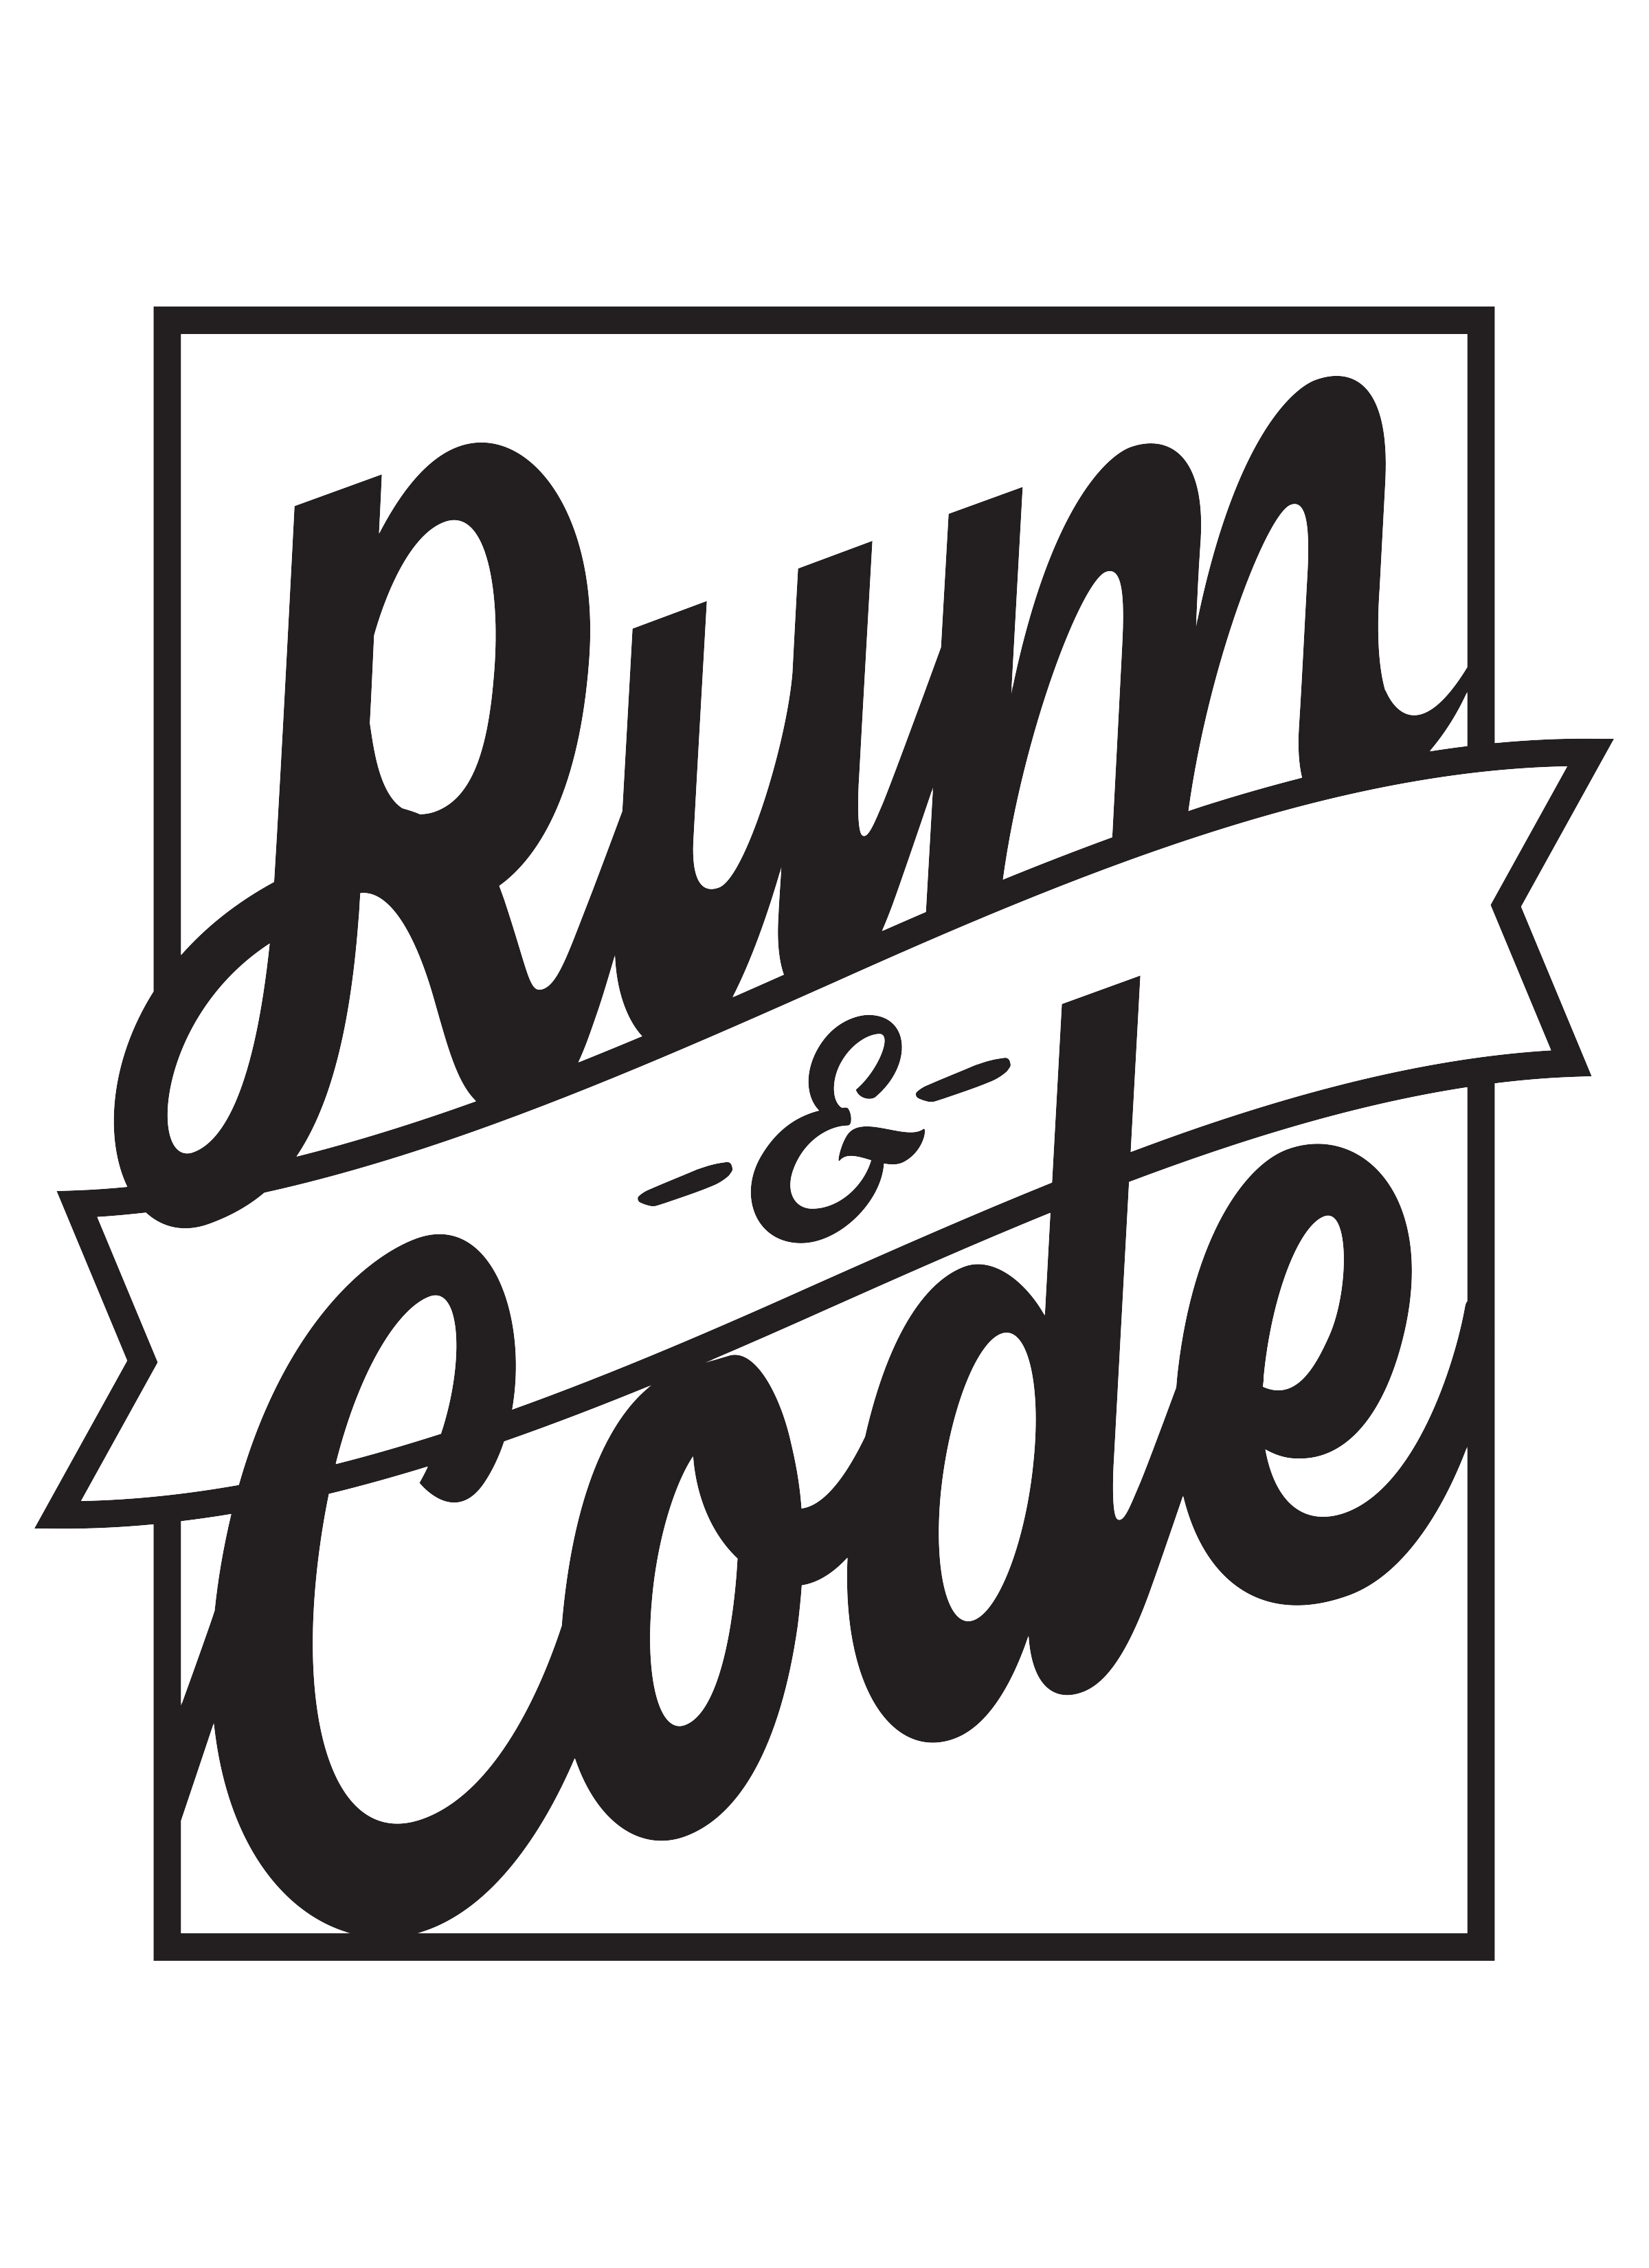 Rum&Code